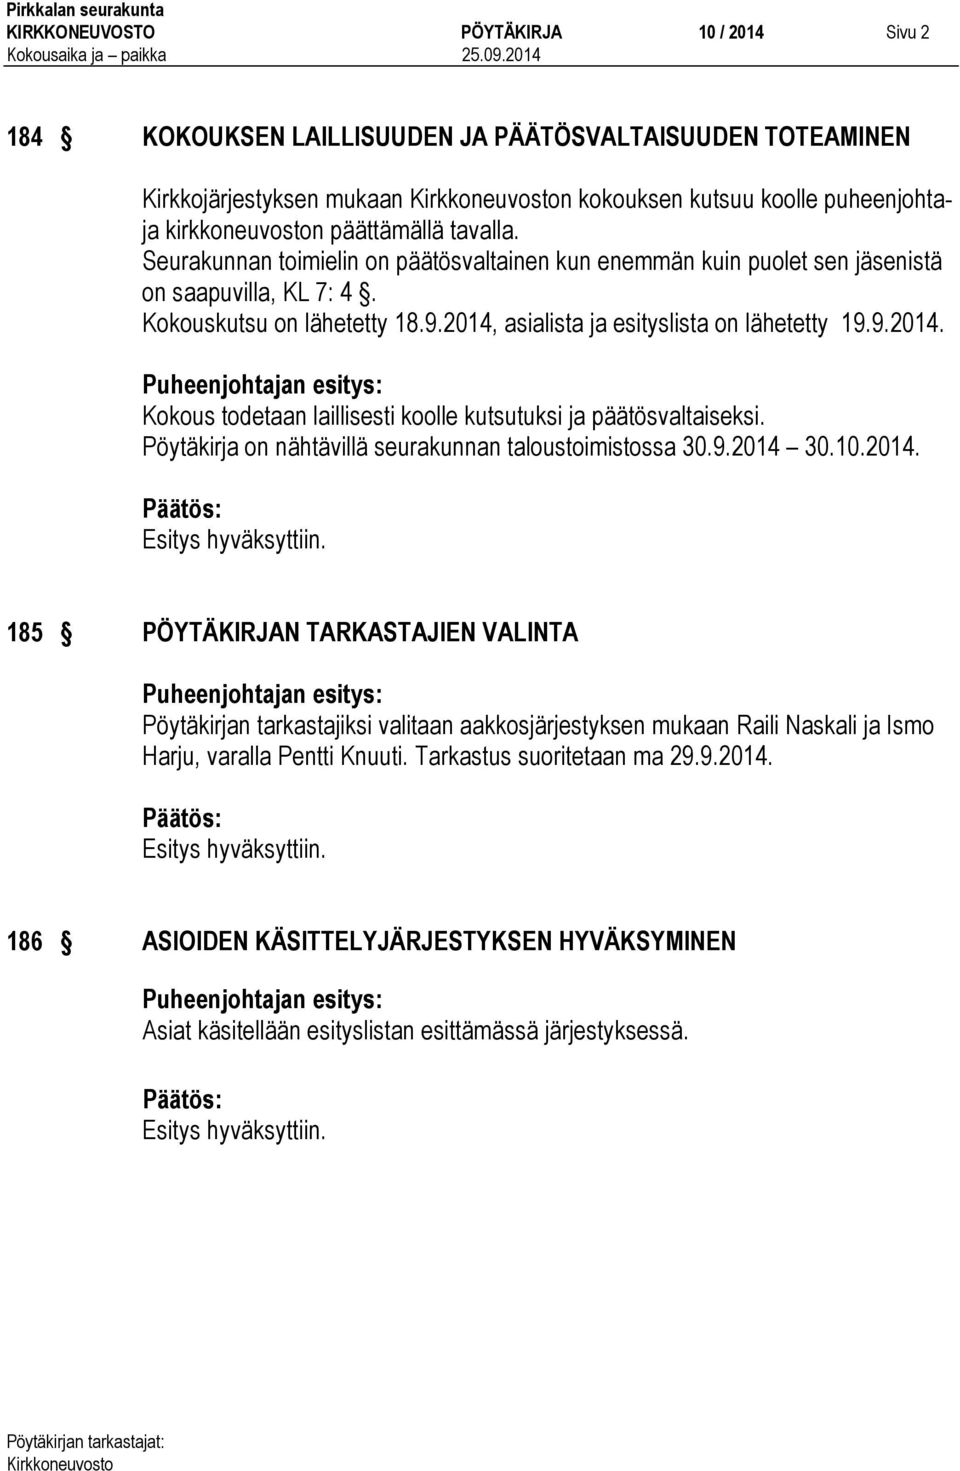 asialista ja esityslista on lähetetty 19.9.2014. Kokous todetaan laillisesti koolle kutsutuksi ja päätösvaltaiseksi. Pöytäkirja on nähtävillä seurakunnan taloustoimistossa 30.9.2014 30.10.2014. 185 PÖYTÄKIRJAN TARKASTAJIEN VALINTA Pöytäkirjan tarkastajiksi valitaan aakkosjärjestyksen mukaan Raili Naskali ja Ismo Harju, varalla Pentti Knuuti.